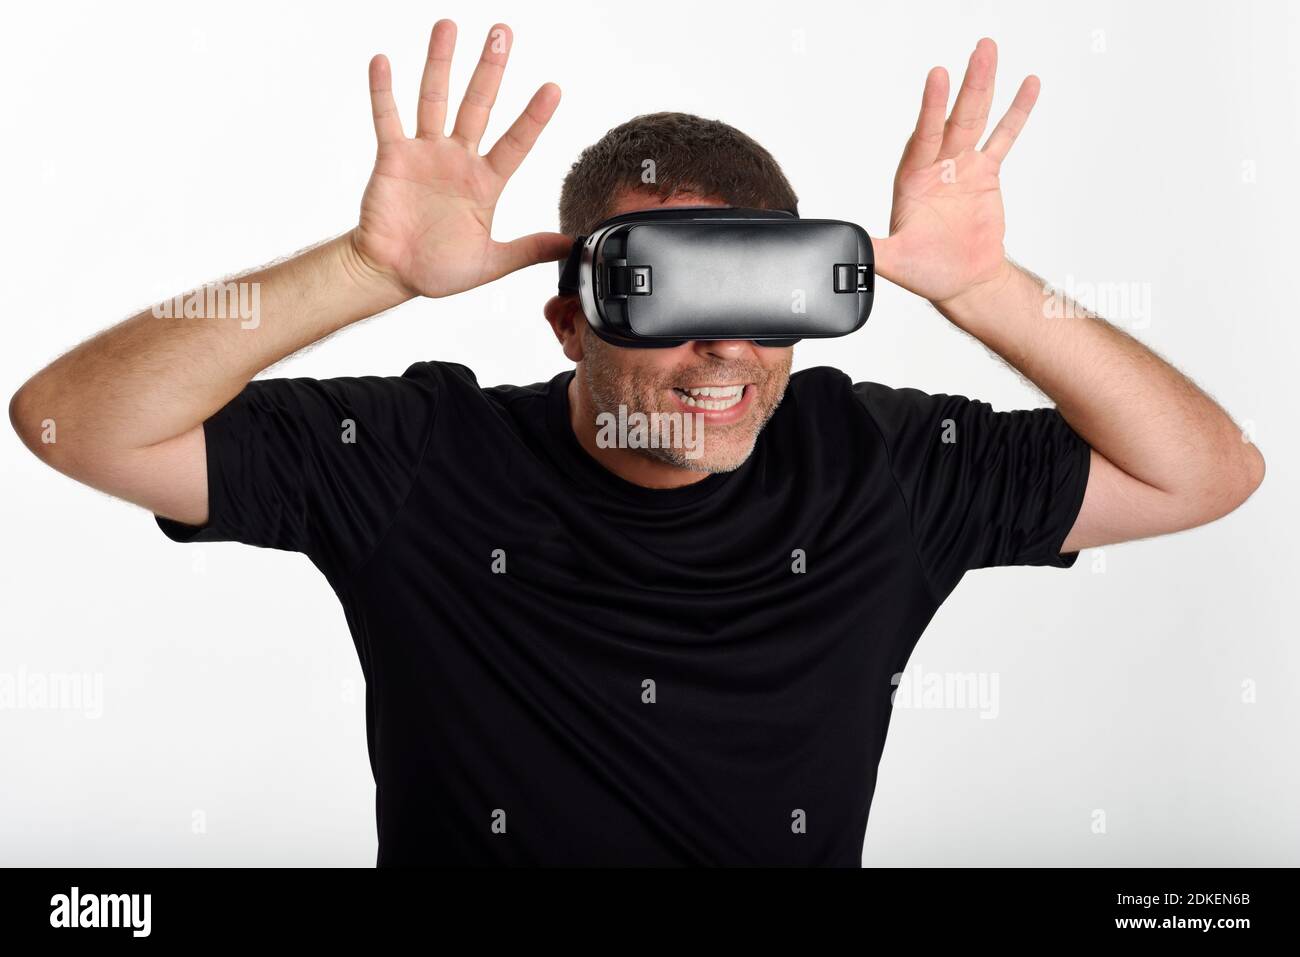 Mann, im VR-Brille und gestikulierte wild mit seinen Händen. Schön  überrascht Kerl mit Virtual reality Brillen Filme anschauen oder  Videospiele spielen, auf weißem Hintergrund Stockfotografie - Alamy